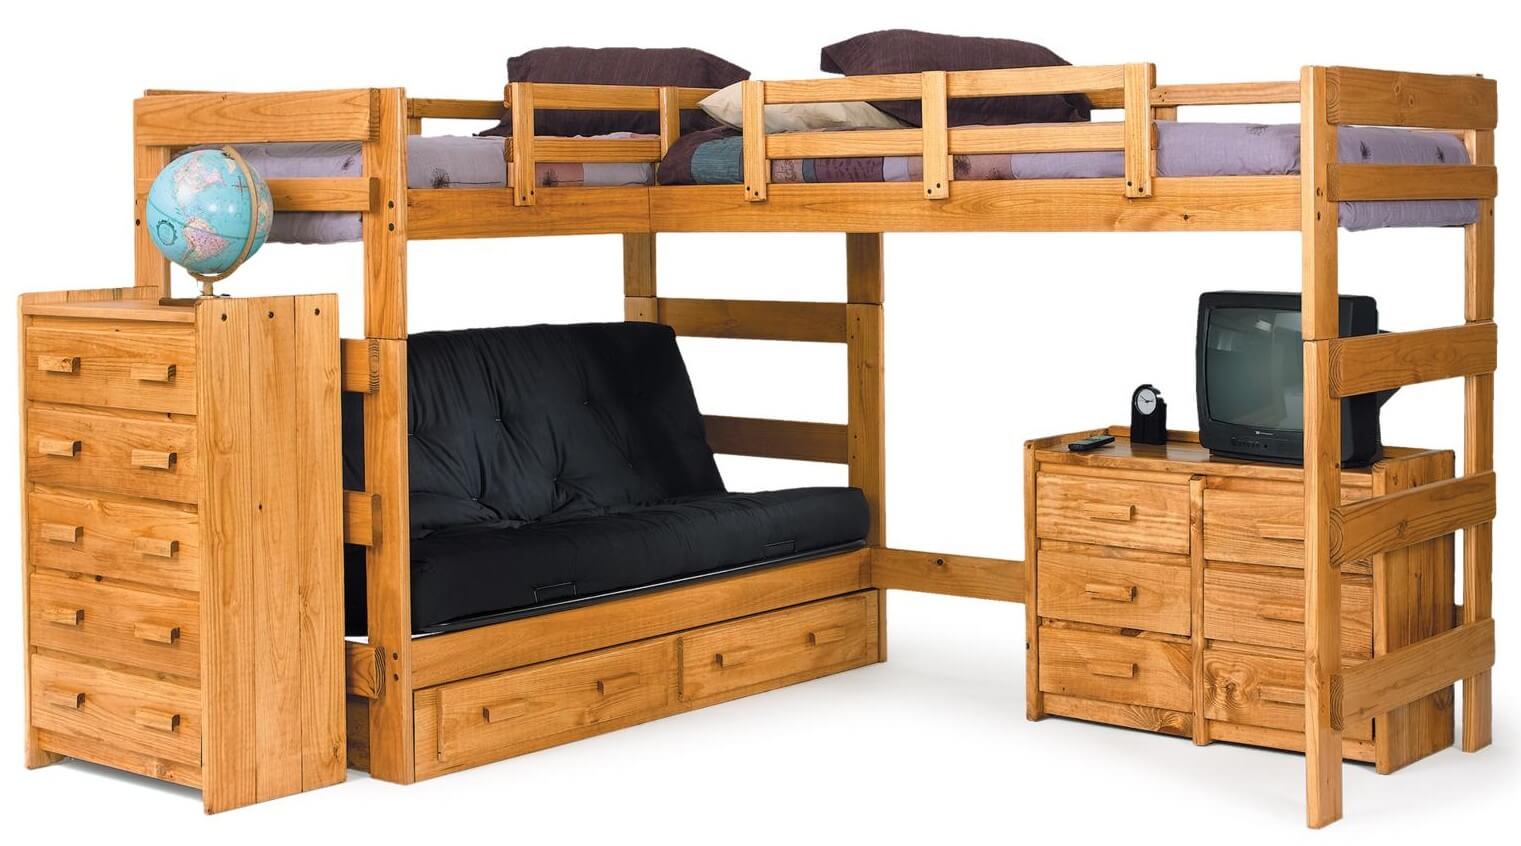 这里有一个相邻的l型双层床设计的例子，两张床都像高架床一样被抬高，下面提供了更多的空间……在这种情况下，一个小沙发/蒲团(更多的睡眠选择)和一个完整的梳妆台。